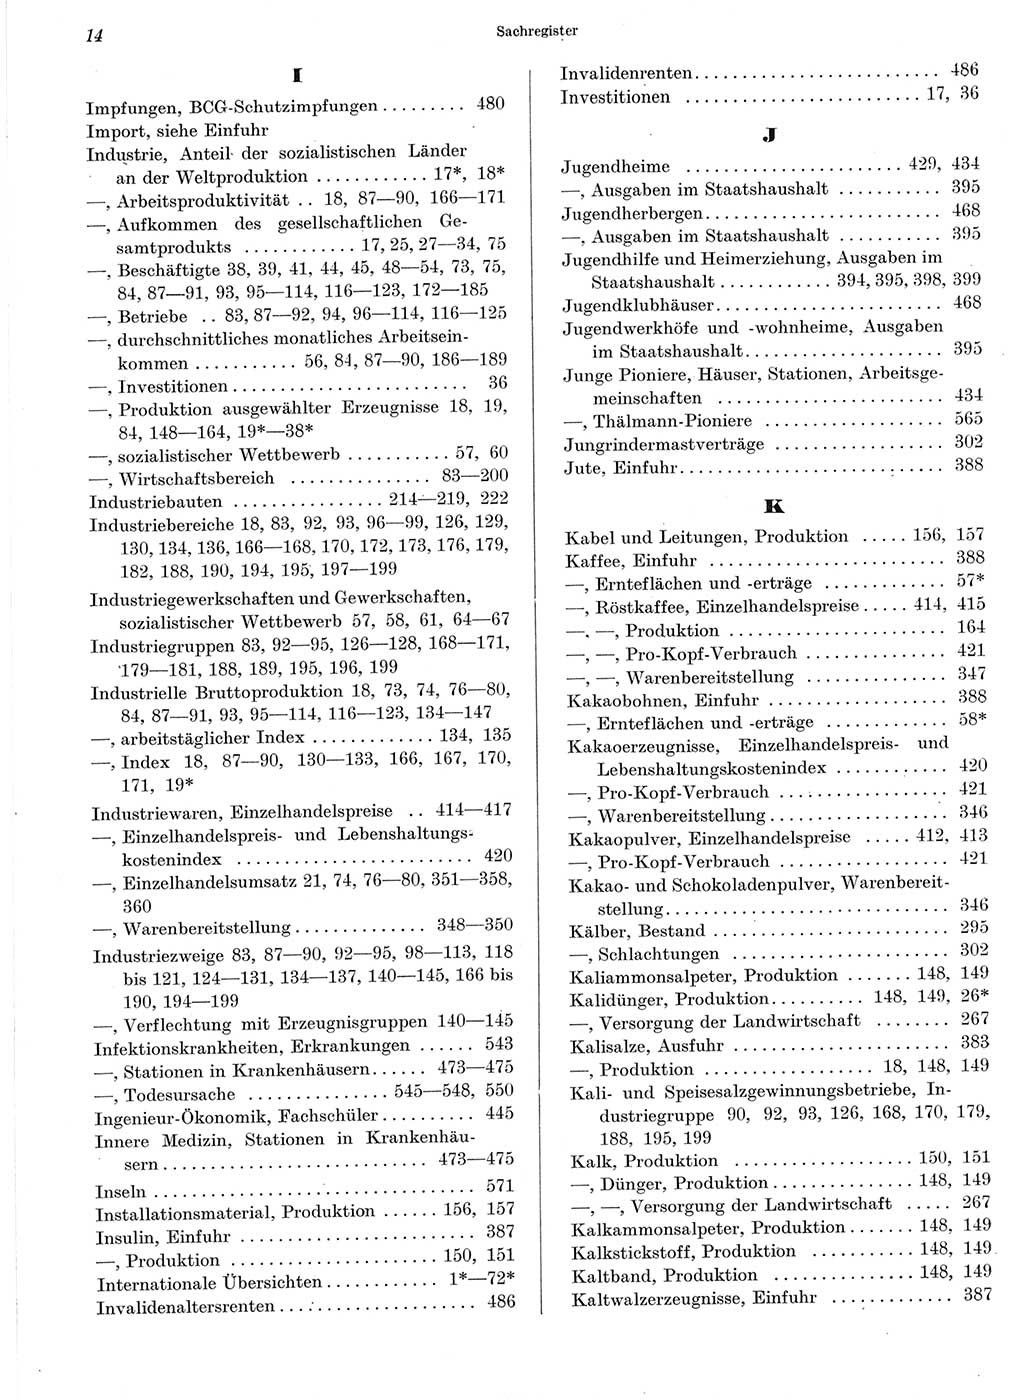 Statistisches Jahrbuch der Deutschen Demokratischen Republik (DDR) 1964, Seite 14 (Stat. Jb. DDR 1964, S. 14)